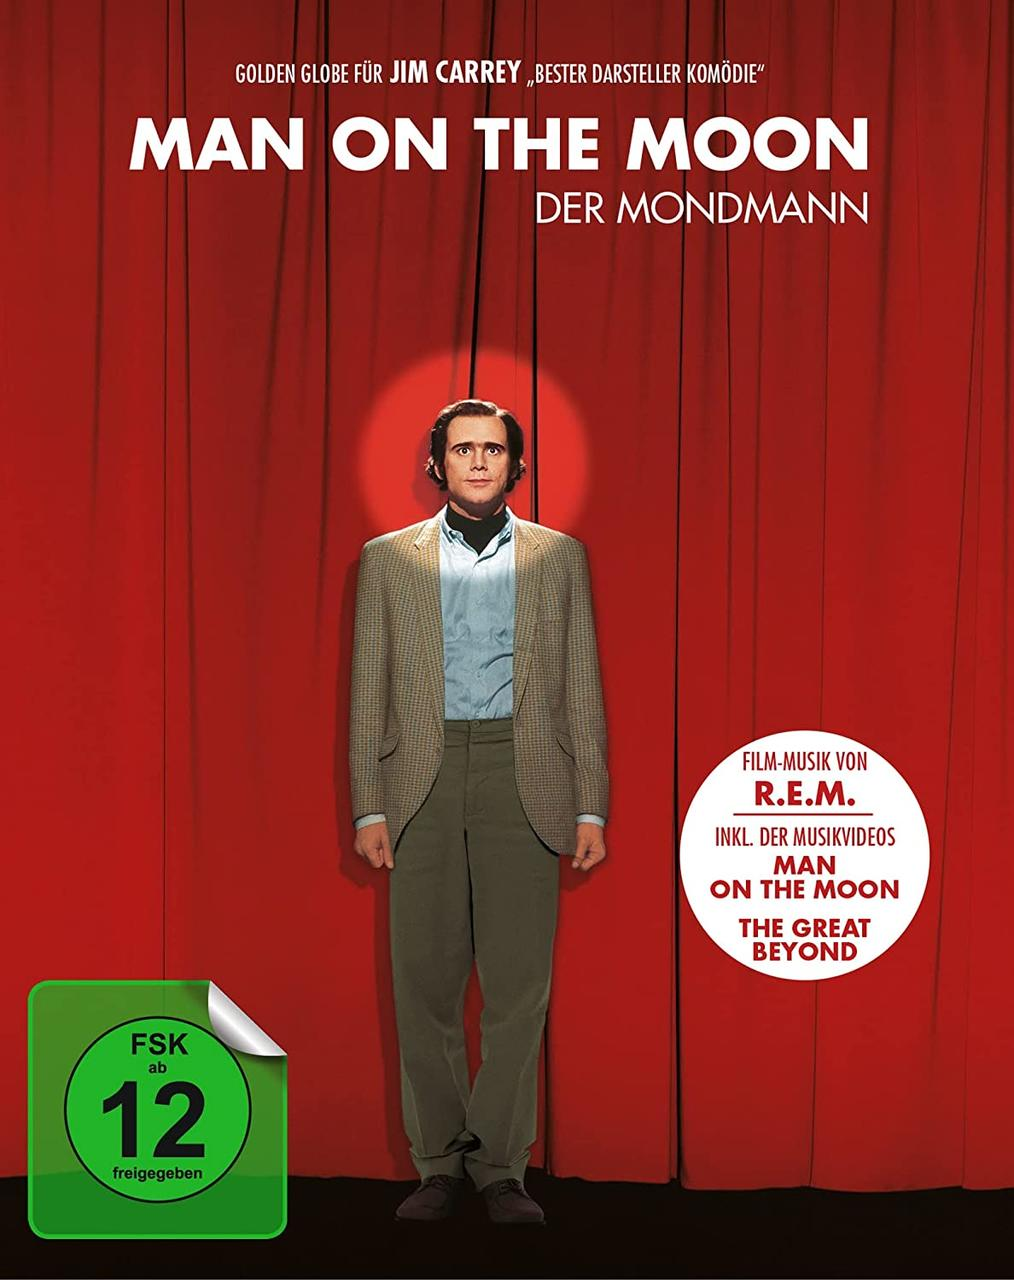 Blu-ray + Mondmann DVD Der